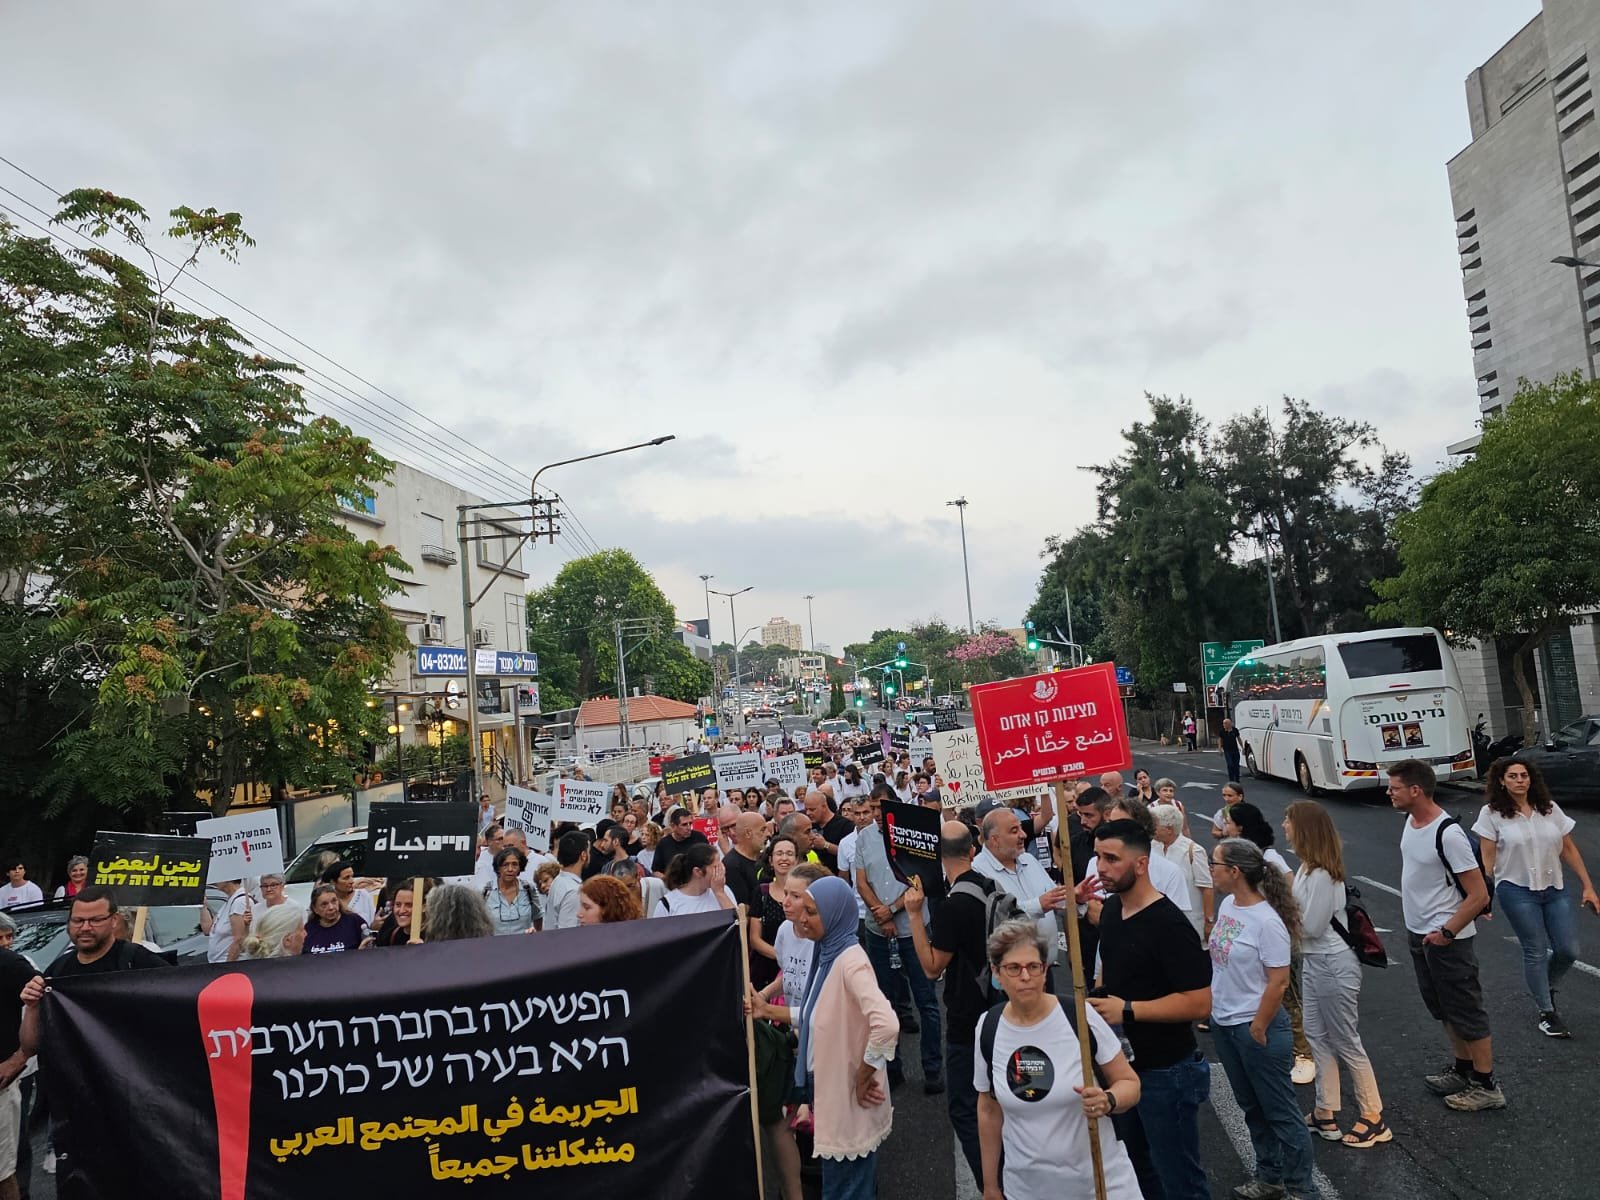 حيفا: اختتام "مسيرة الأموات"- حضور مهيب رافض للعنف والجريمة!-9